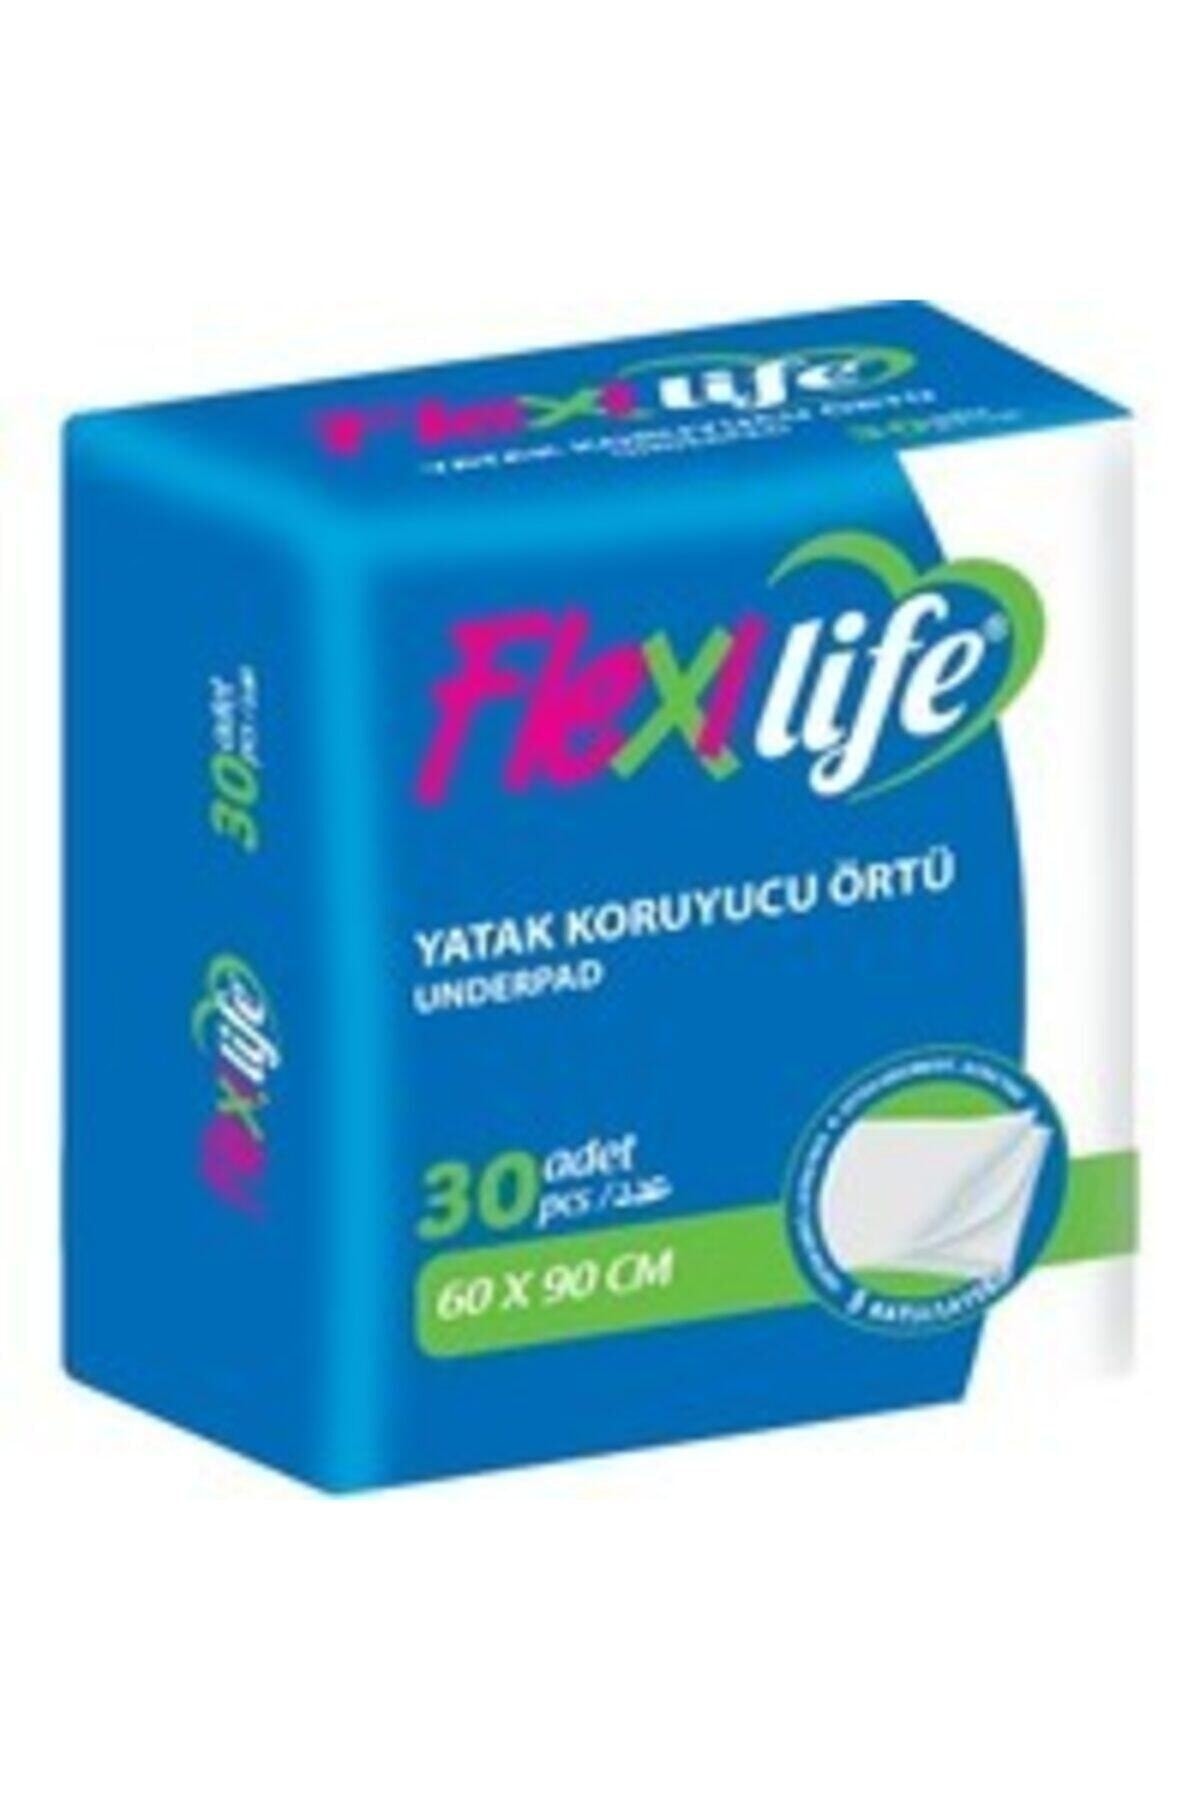 Flexilife Plus Flexi Life Yatak Koruyucu Örtü 60*90cm 30'lu